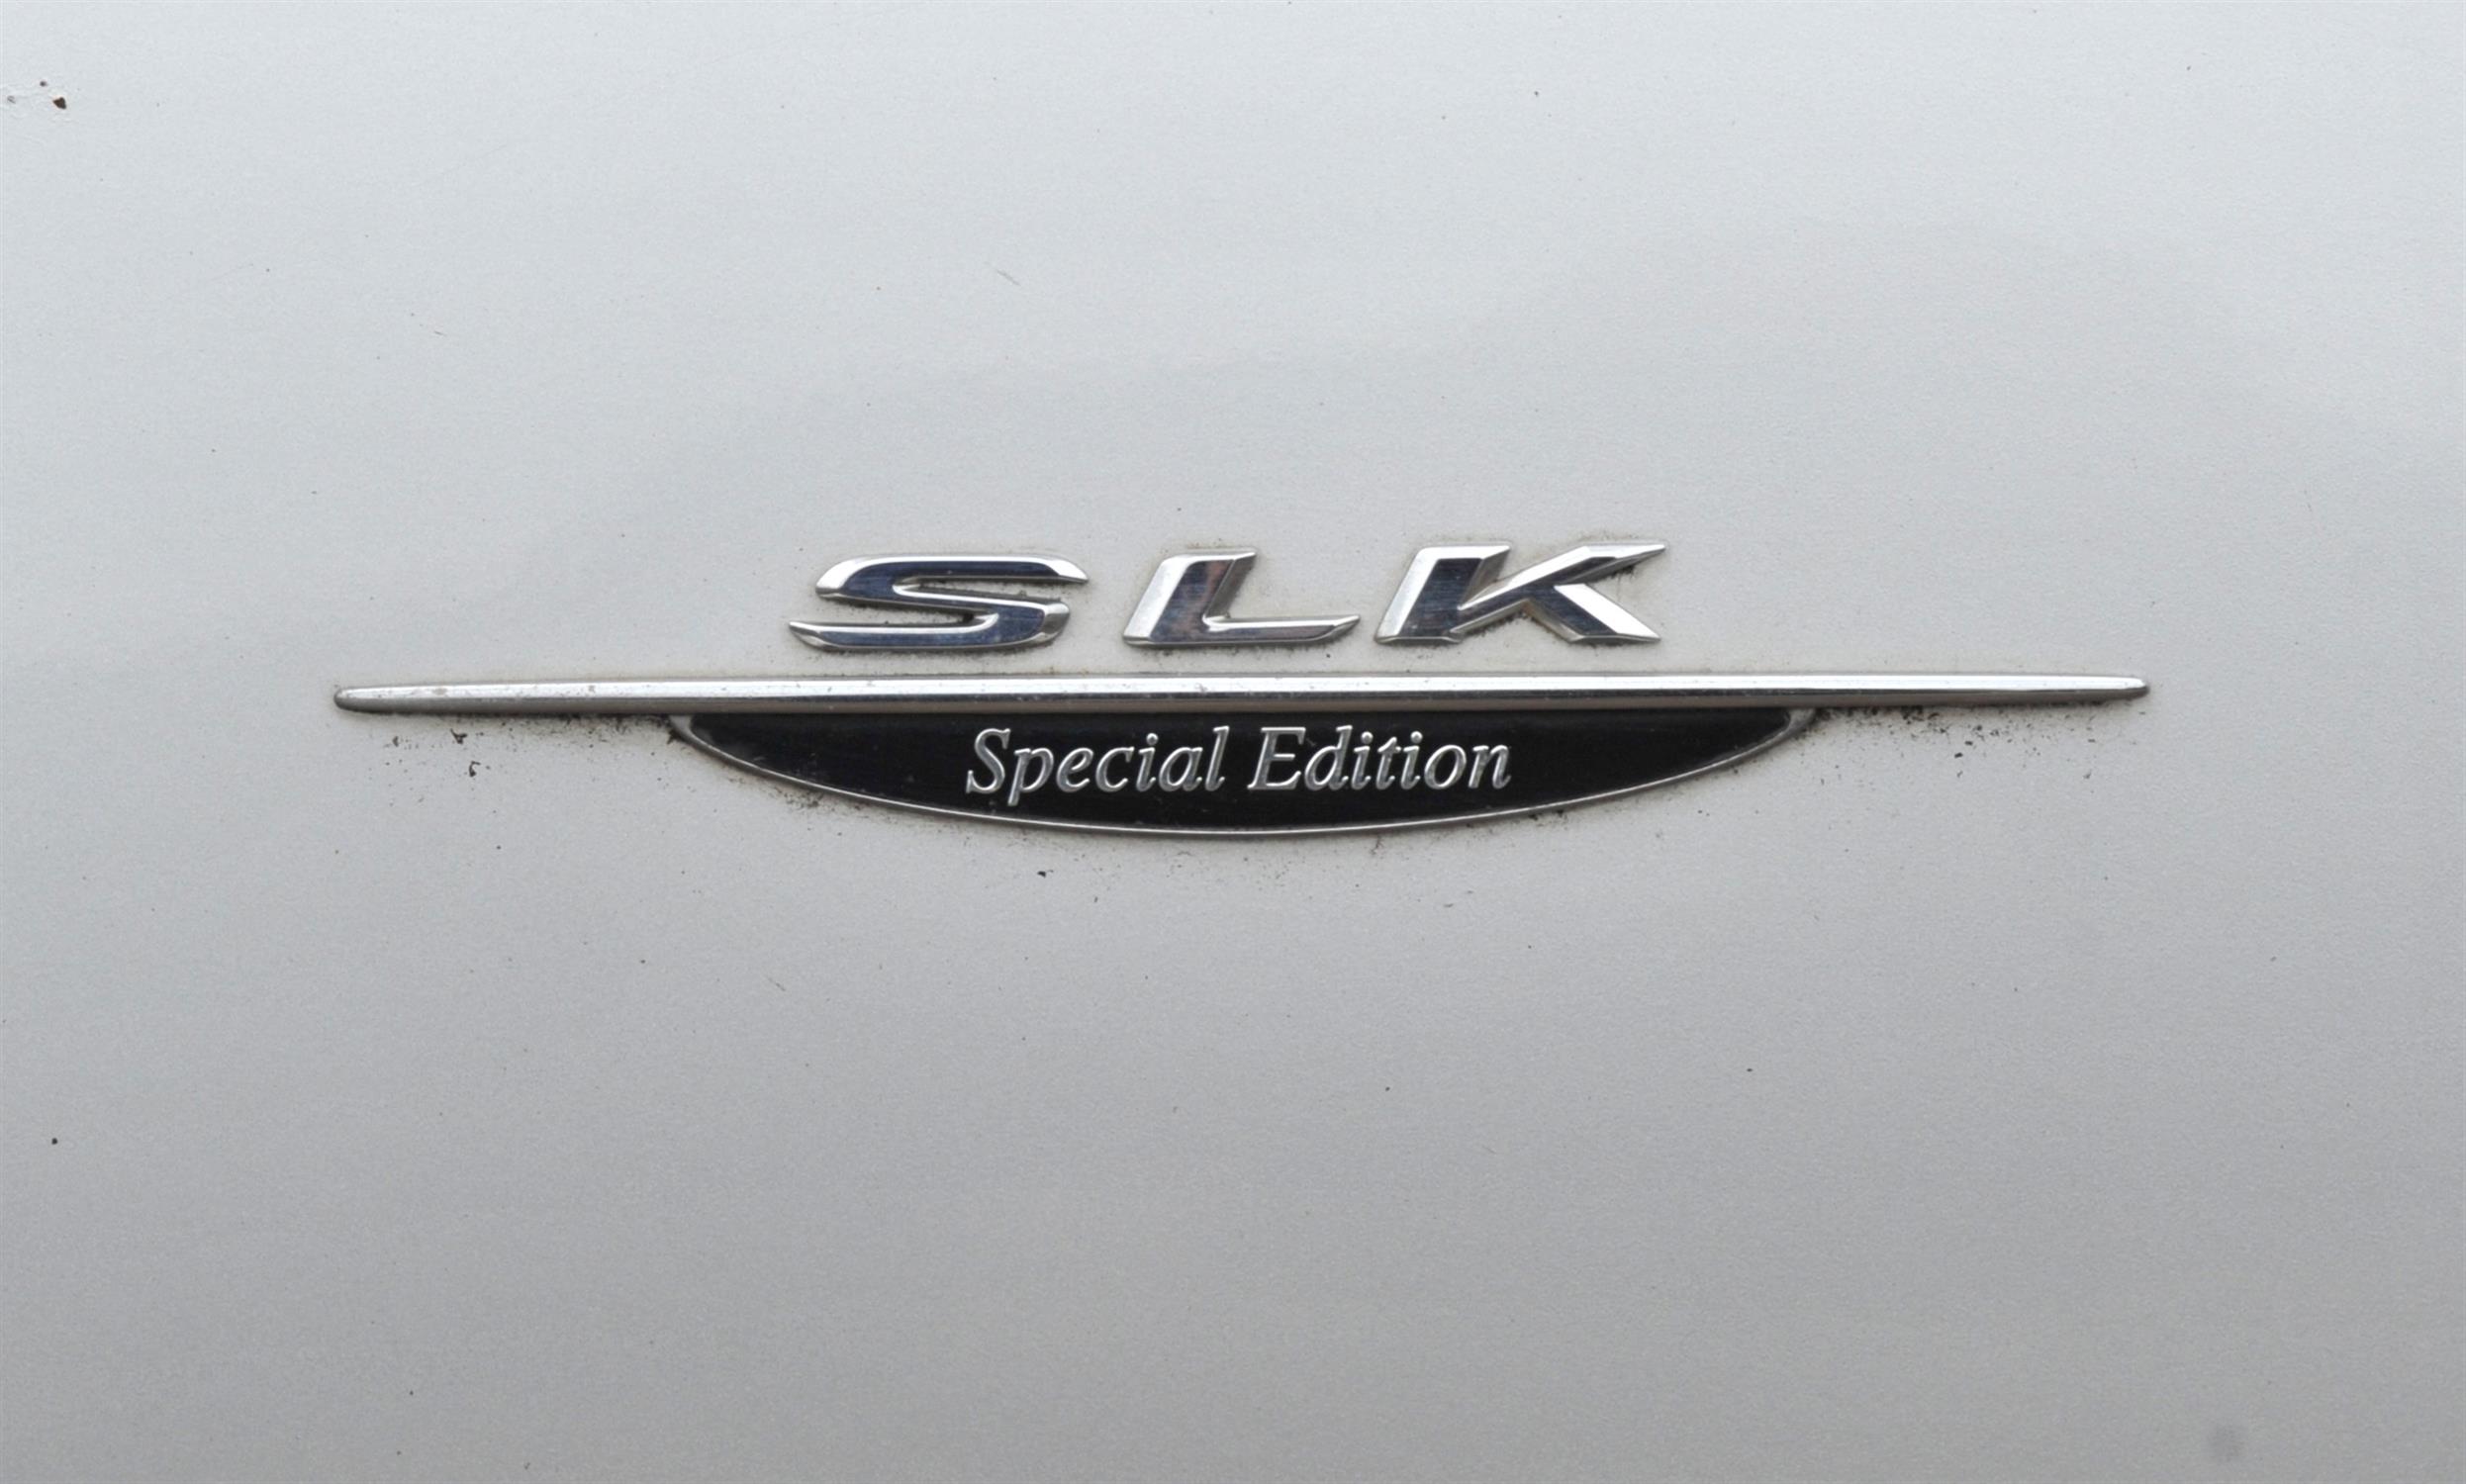 2002 Mercedes Benz SLK200 Special Edition Kompressor. Registration number: LK52 ATO. - Image 13 of 15